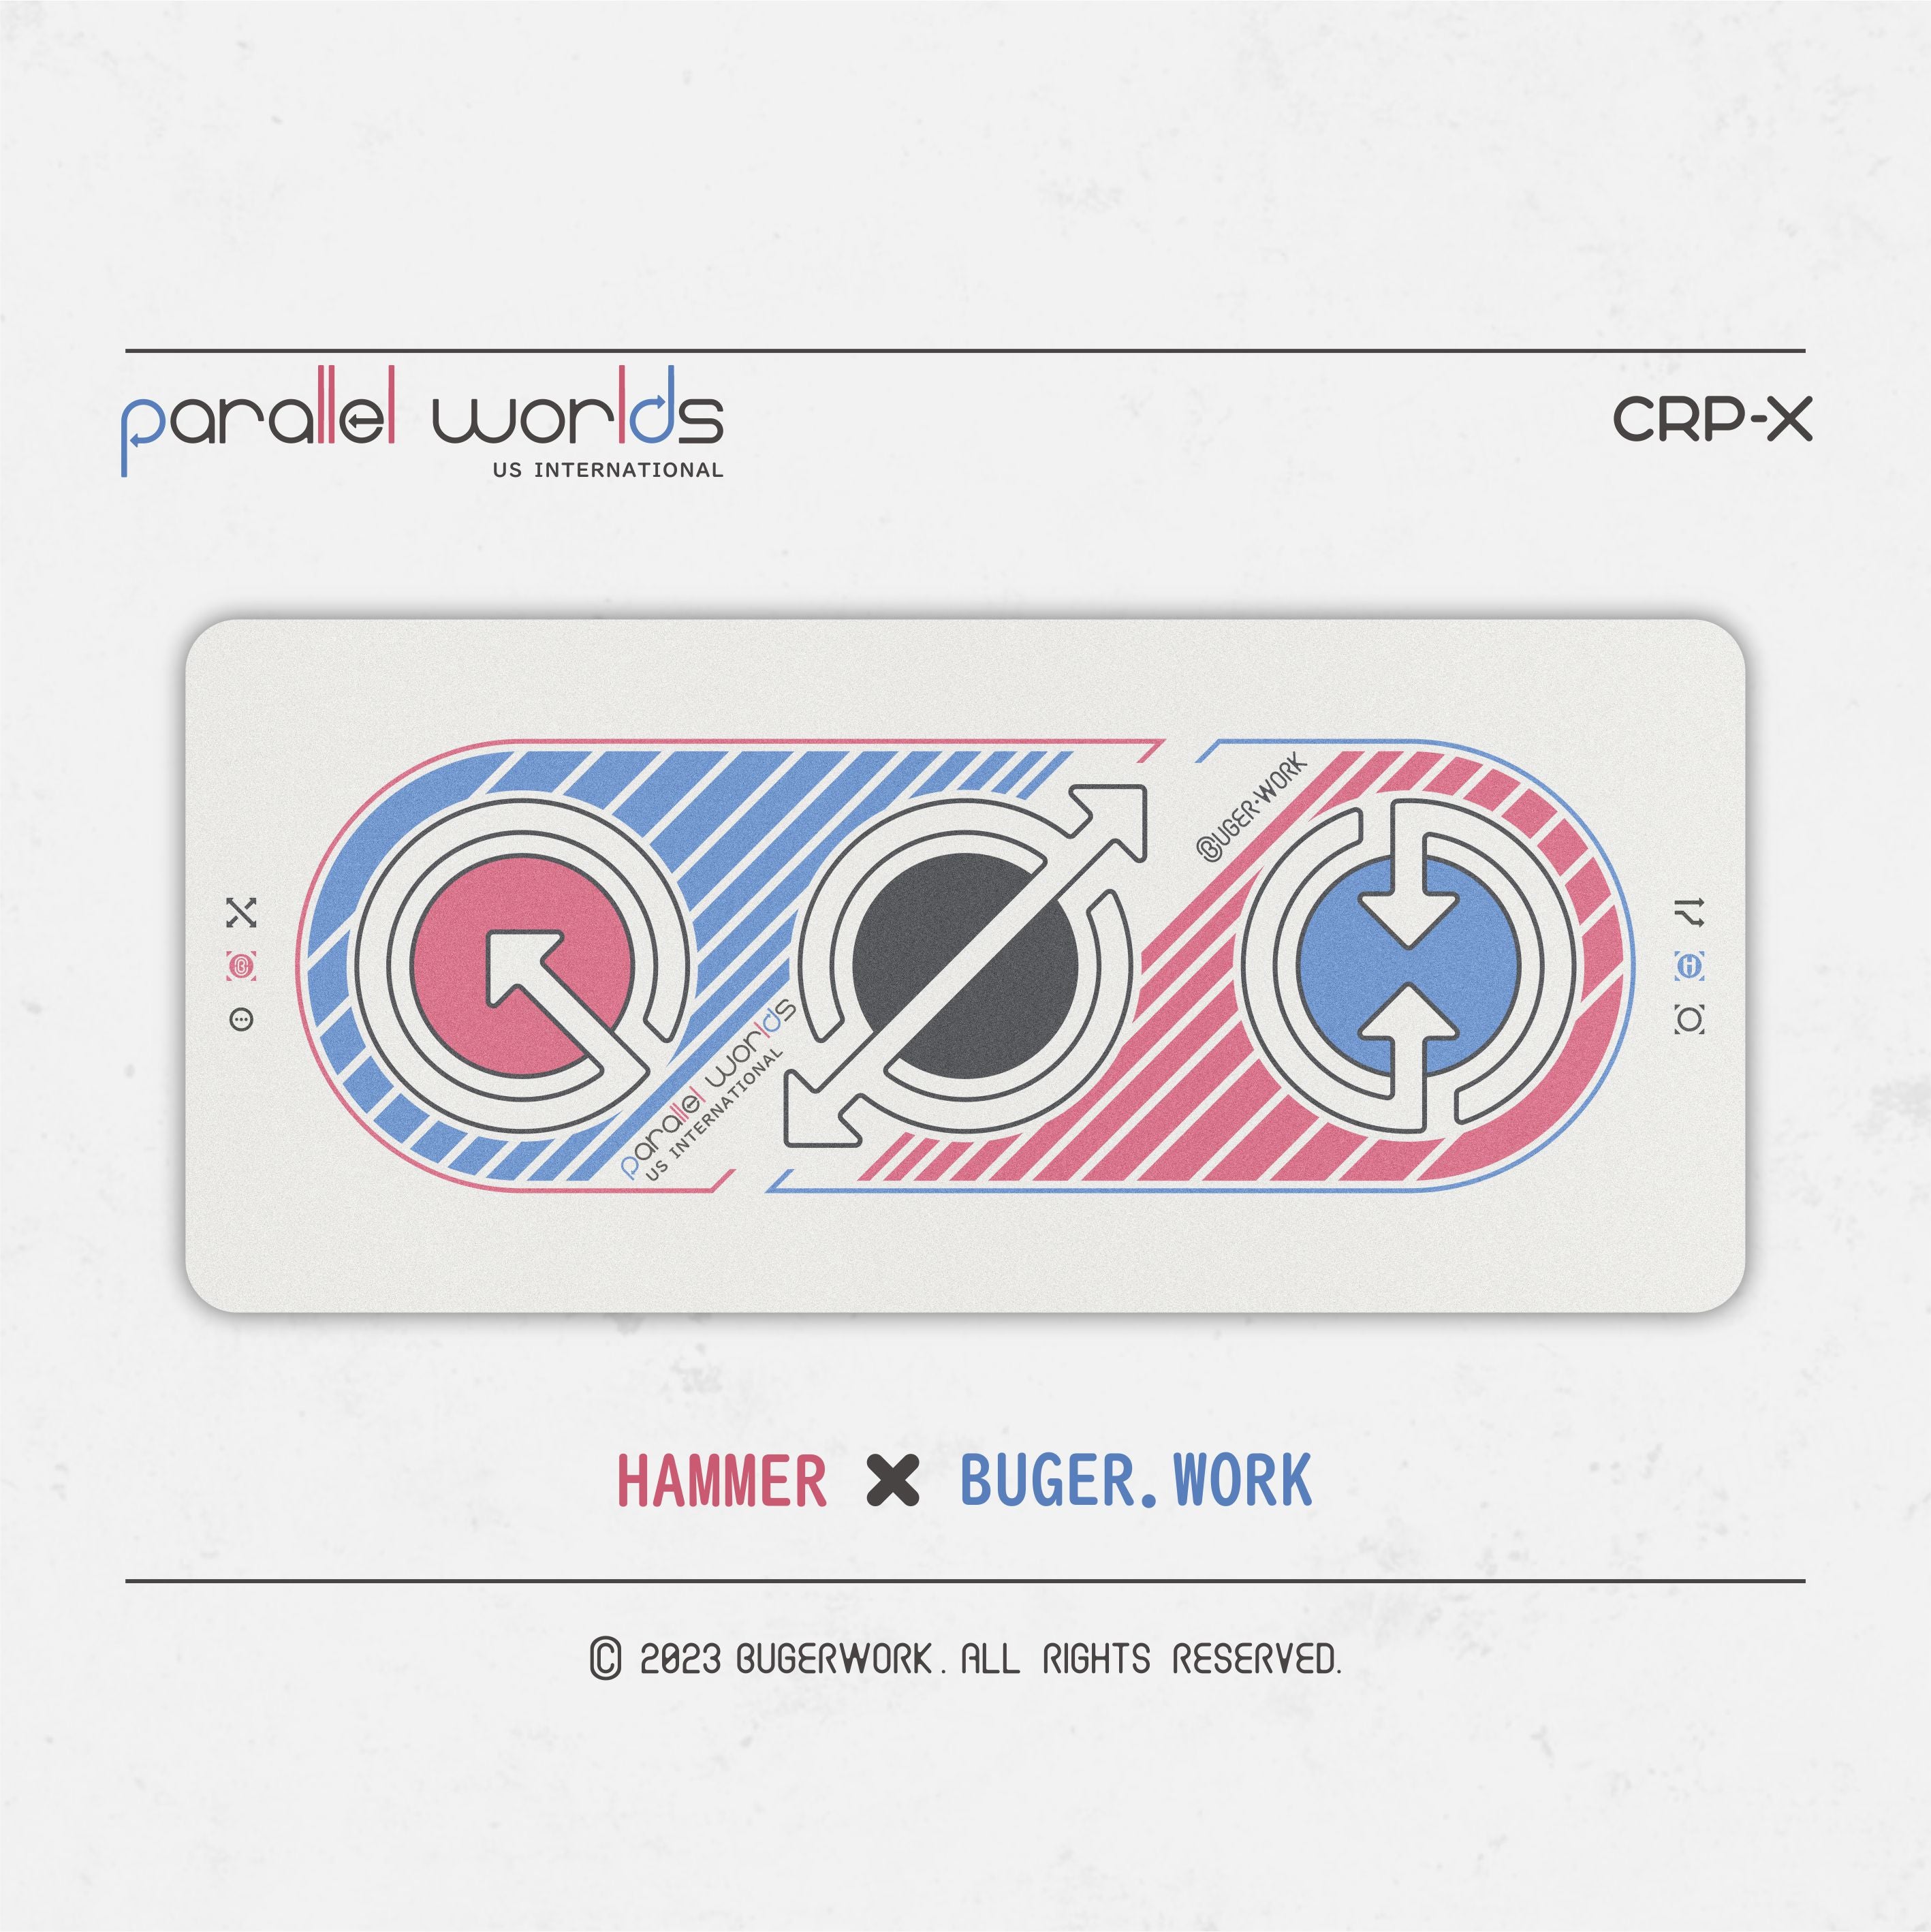 [GB] Hammer & BUGERWORK Parallel-Worlds